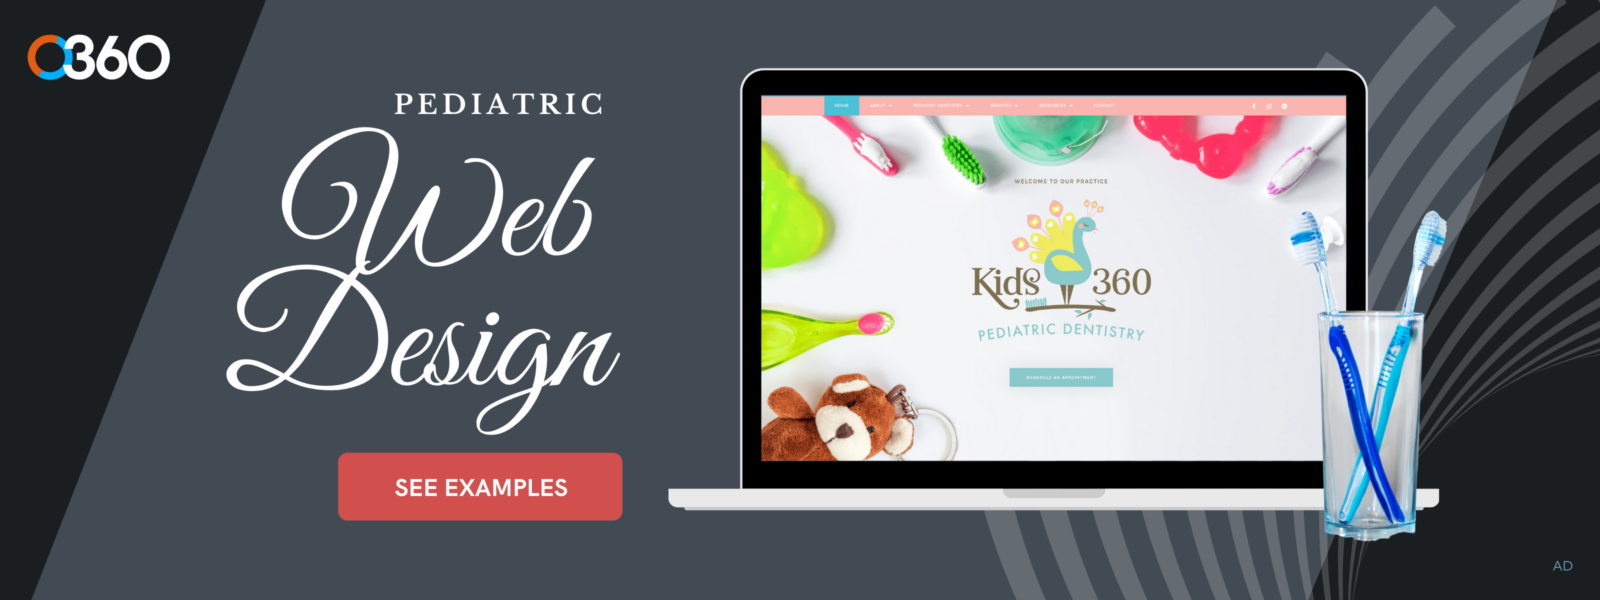 O360 Ad - Pediatric Web Design